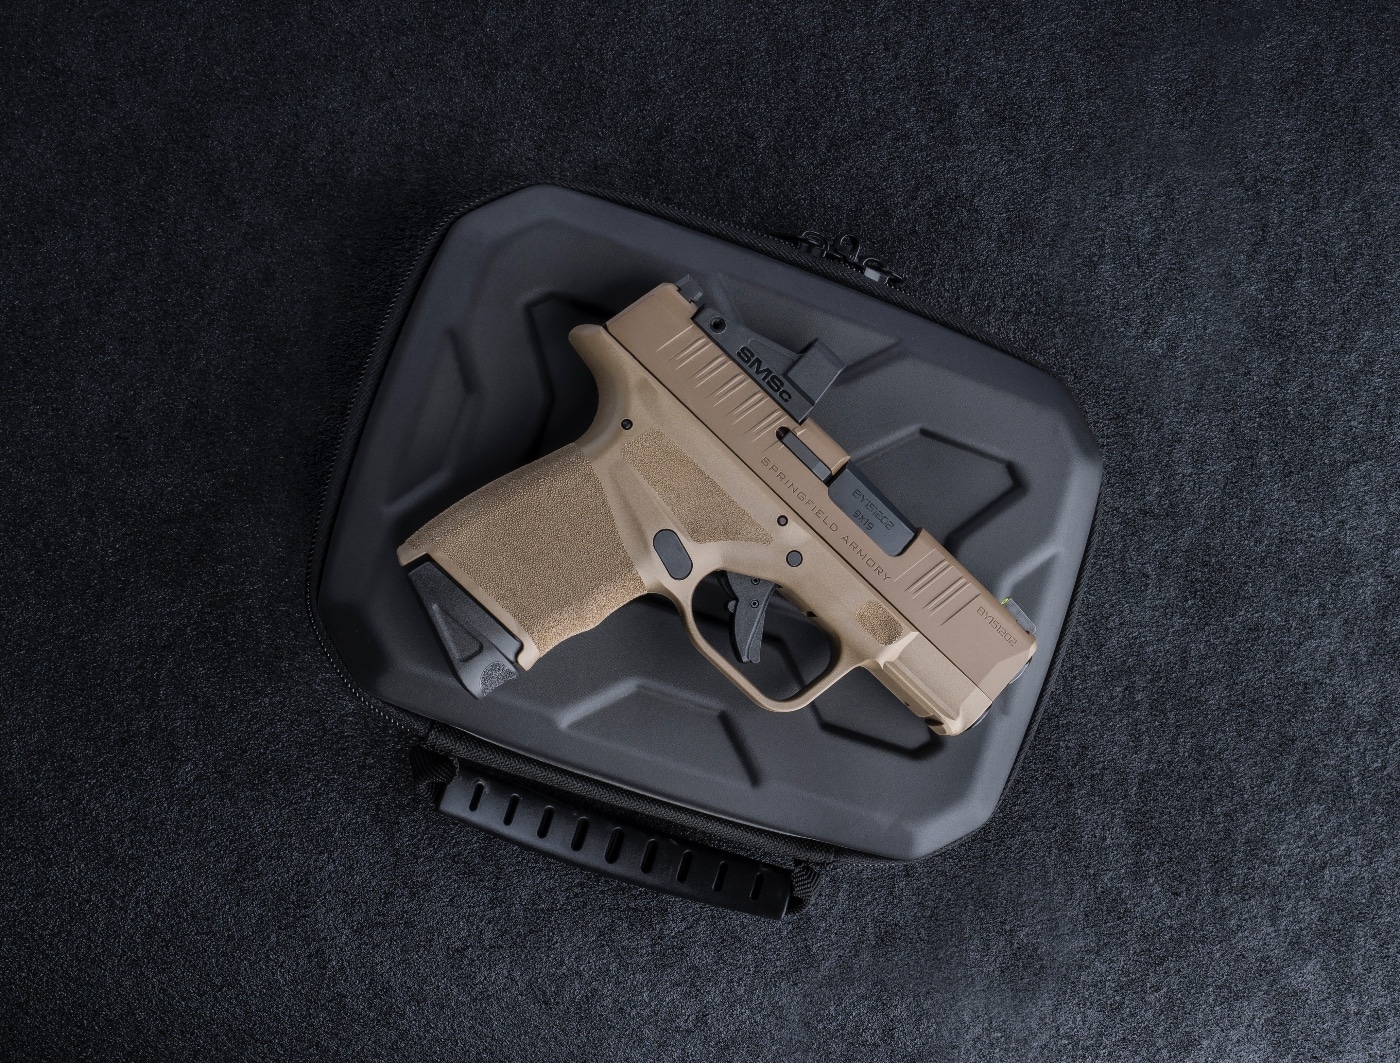 hellcat fde 9mm handgun pistol gun firearm box